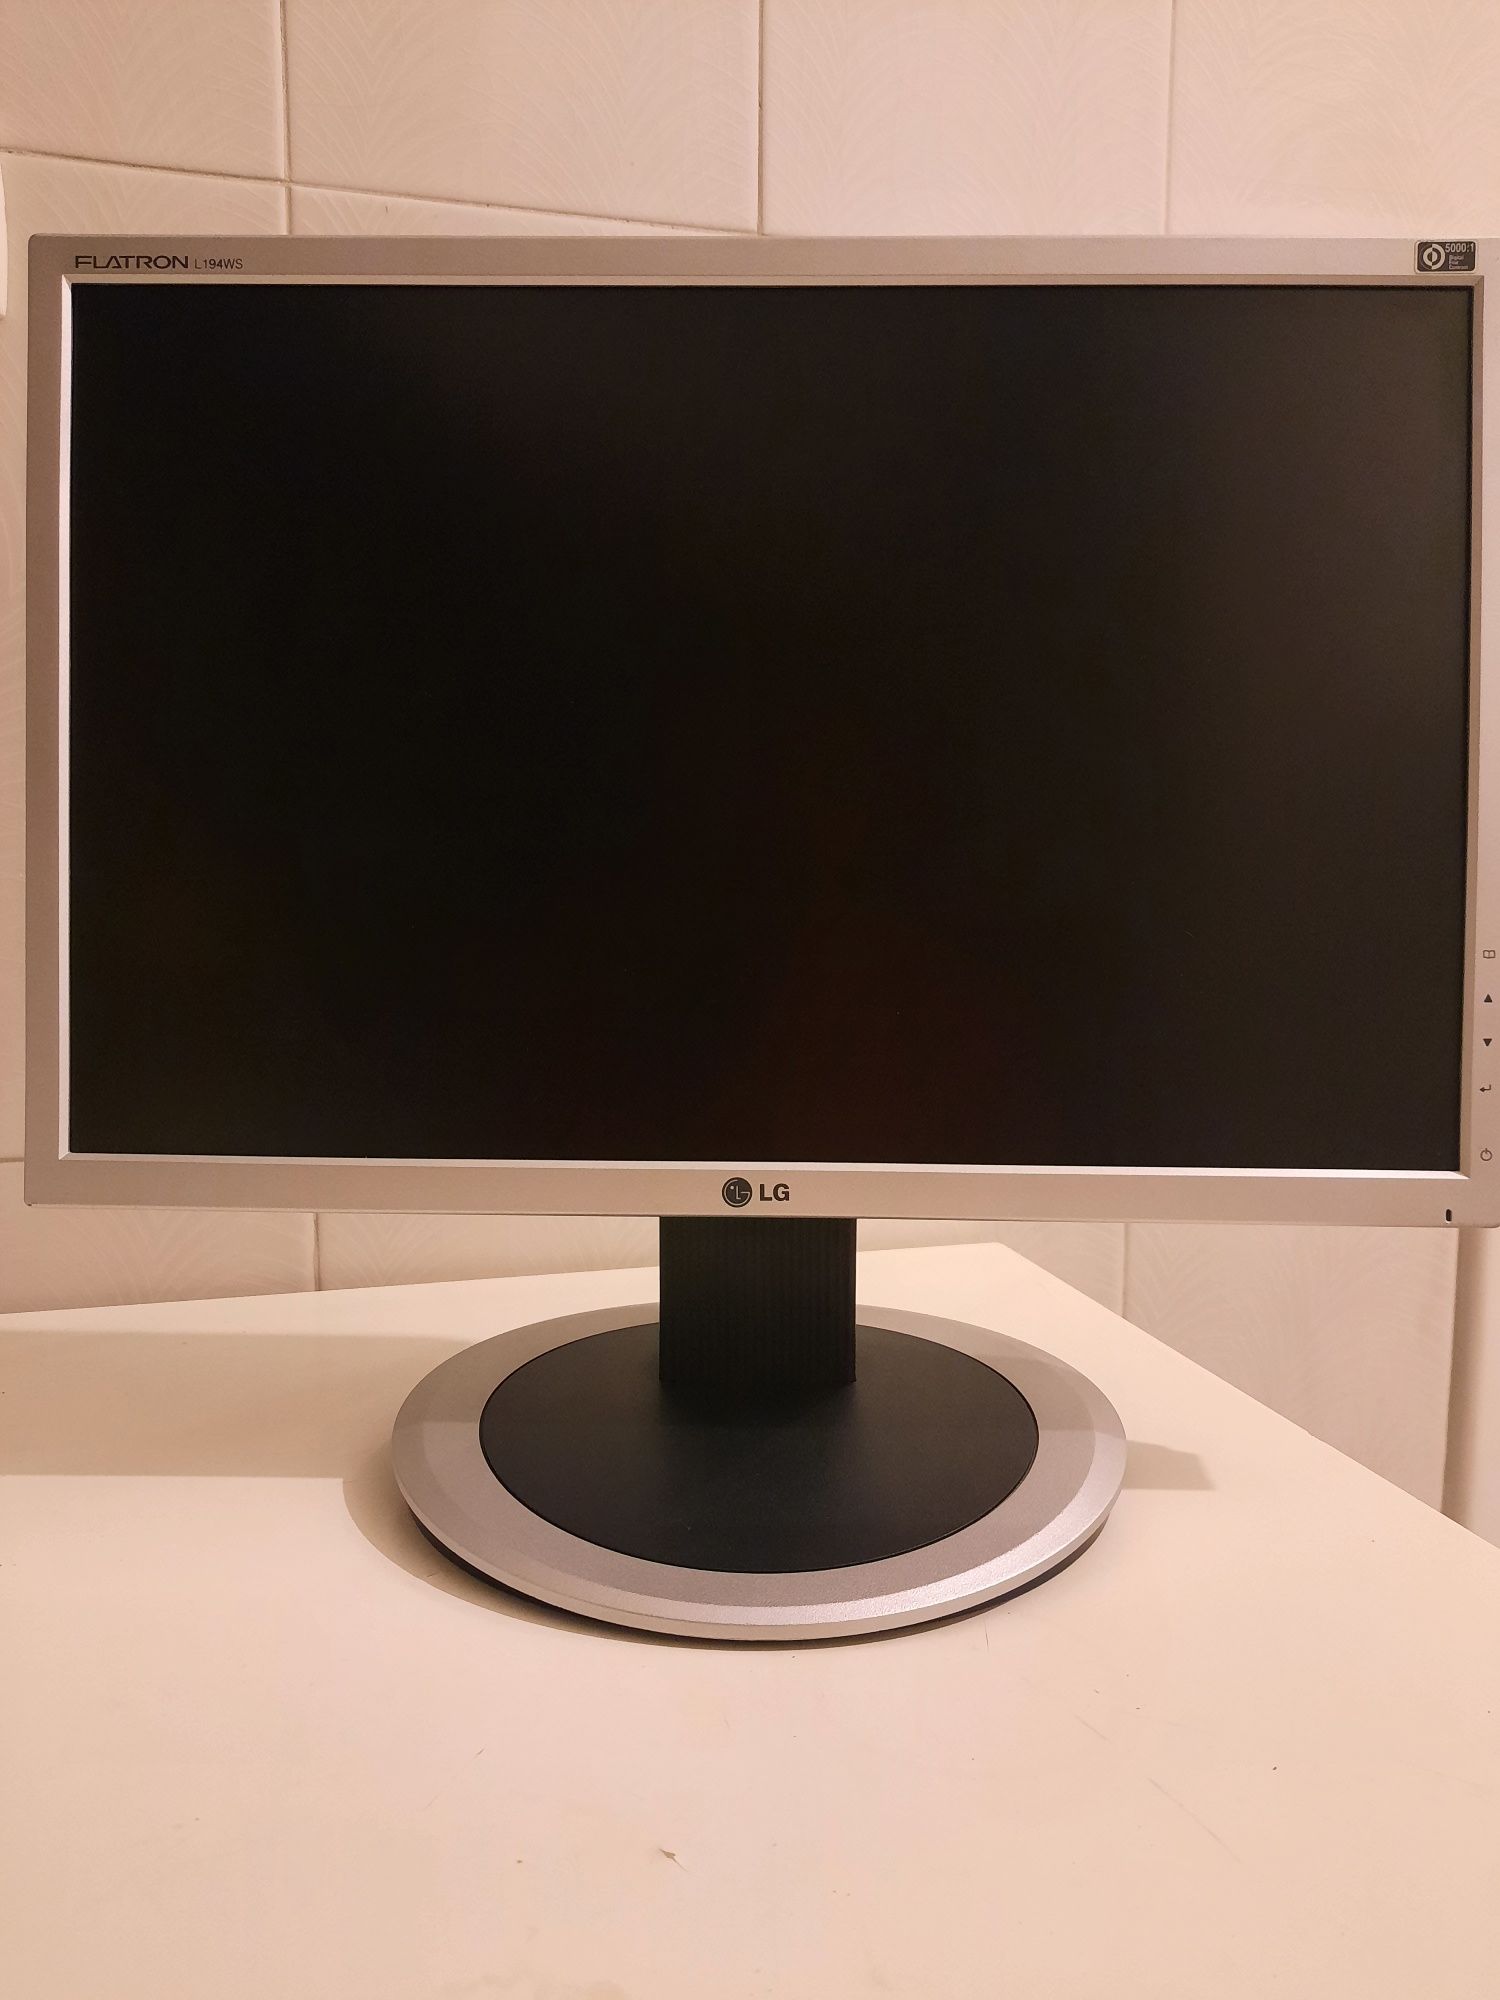 Monitor computqdor Widescreen LG flatron de 19 polegadas